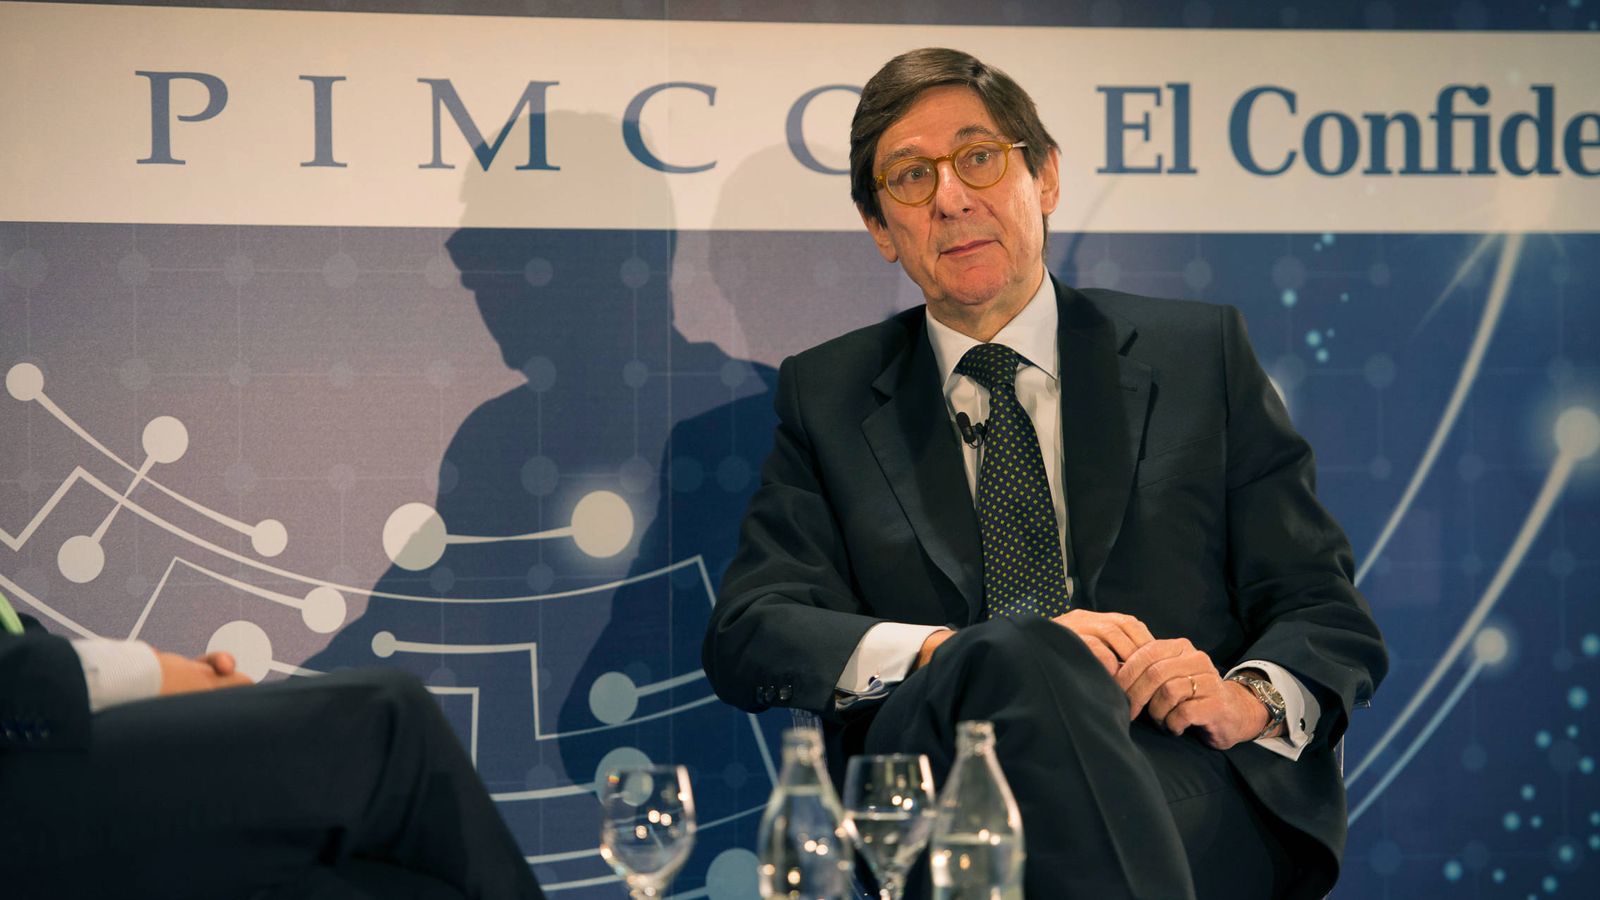 Foto: José Ignacio Goirigolzarri, presidente de Bankia, en el Foro El Confidencial-Pimco.